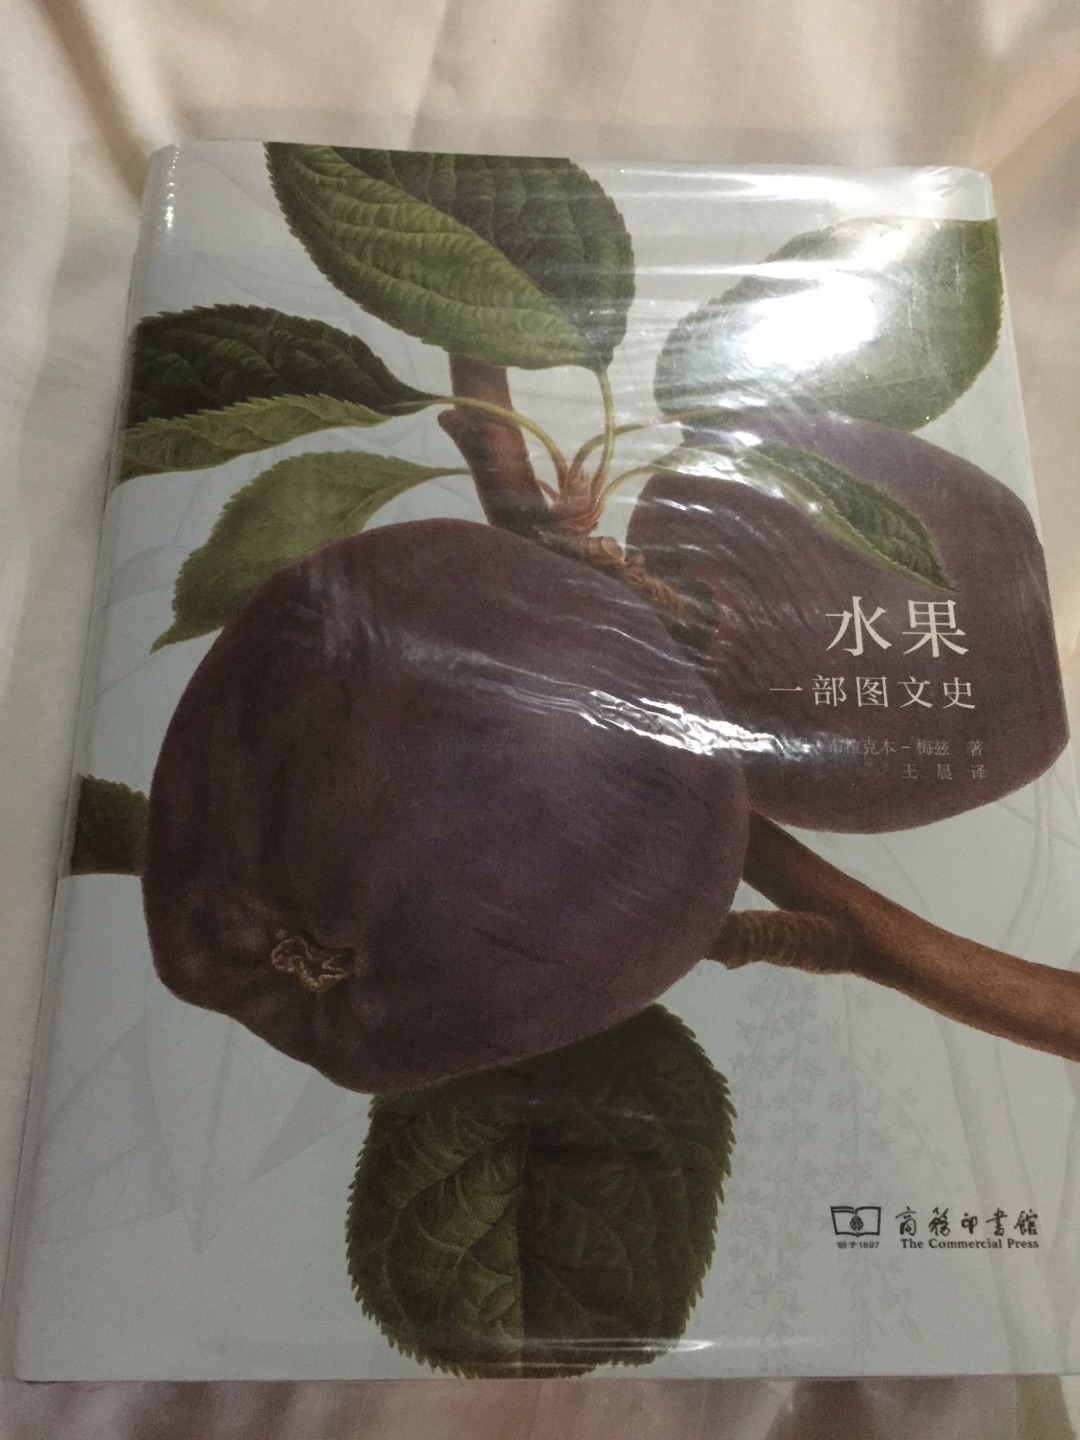 一本可读性很强的书，了解各种水果的来历，吃货必看，对植物学有兴趣的也可以看。